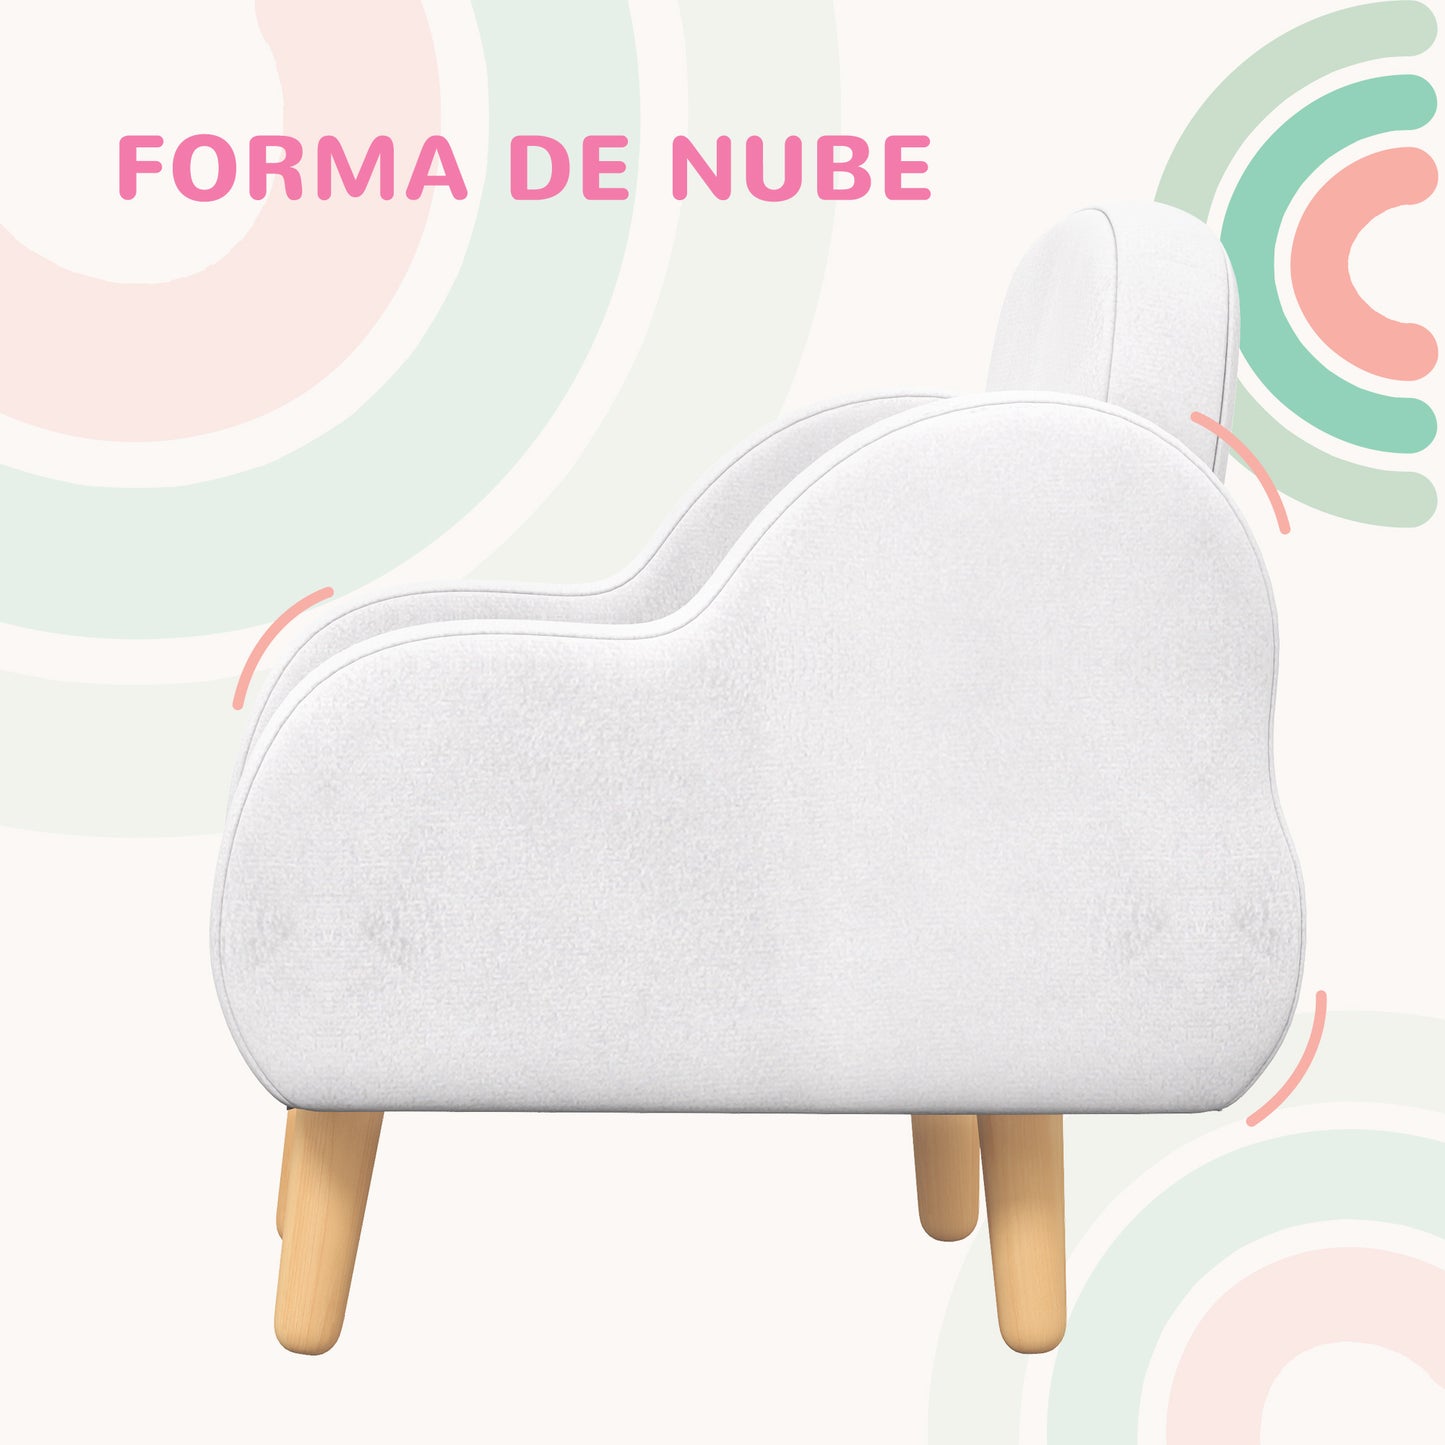 ZONEKIZ Sillón para Niños Sillón Infantil Diseño de Nube con Tacto Súper Suave y 4 Patas para Niños de 18-36 Meses Carga 40 kg 46x51x55 cm Blanco